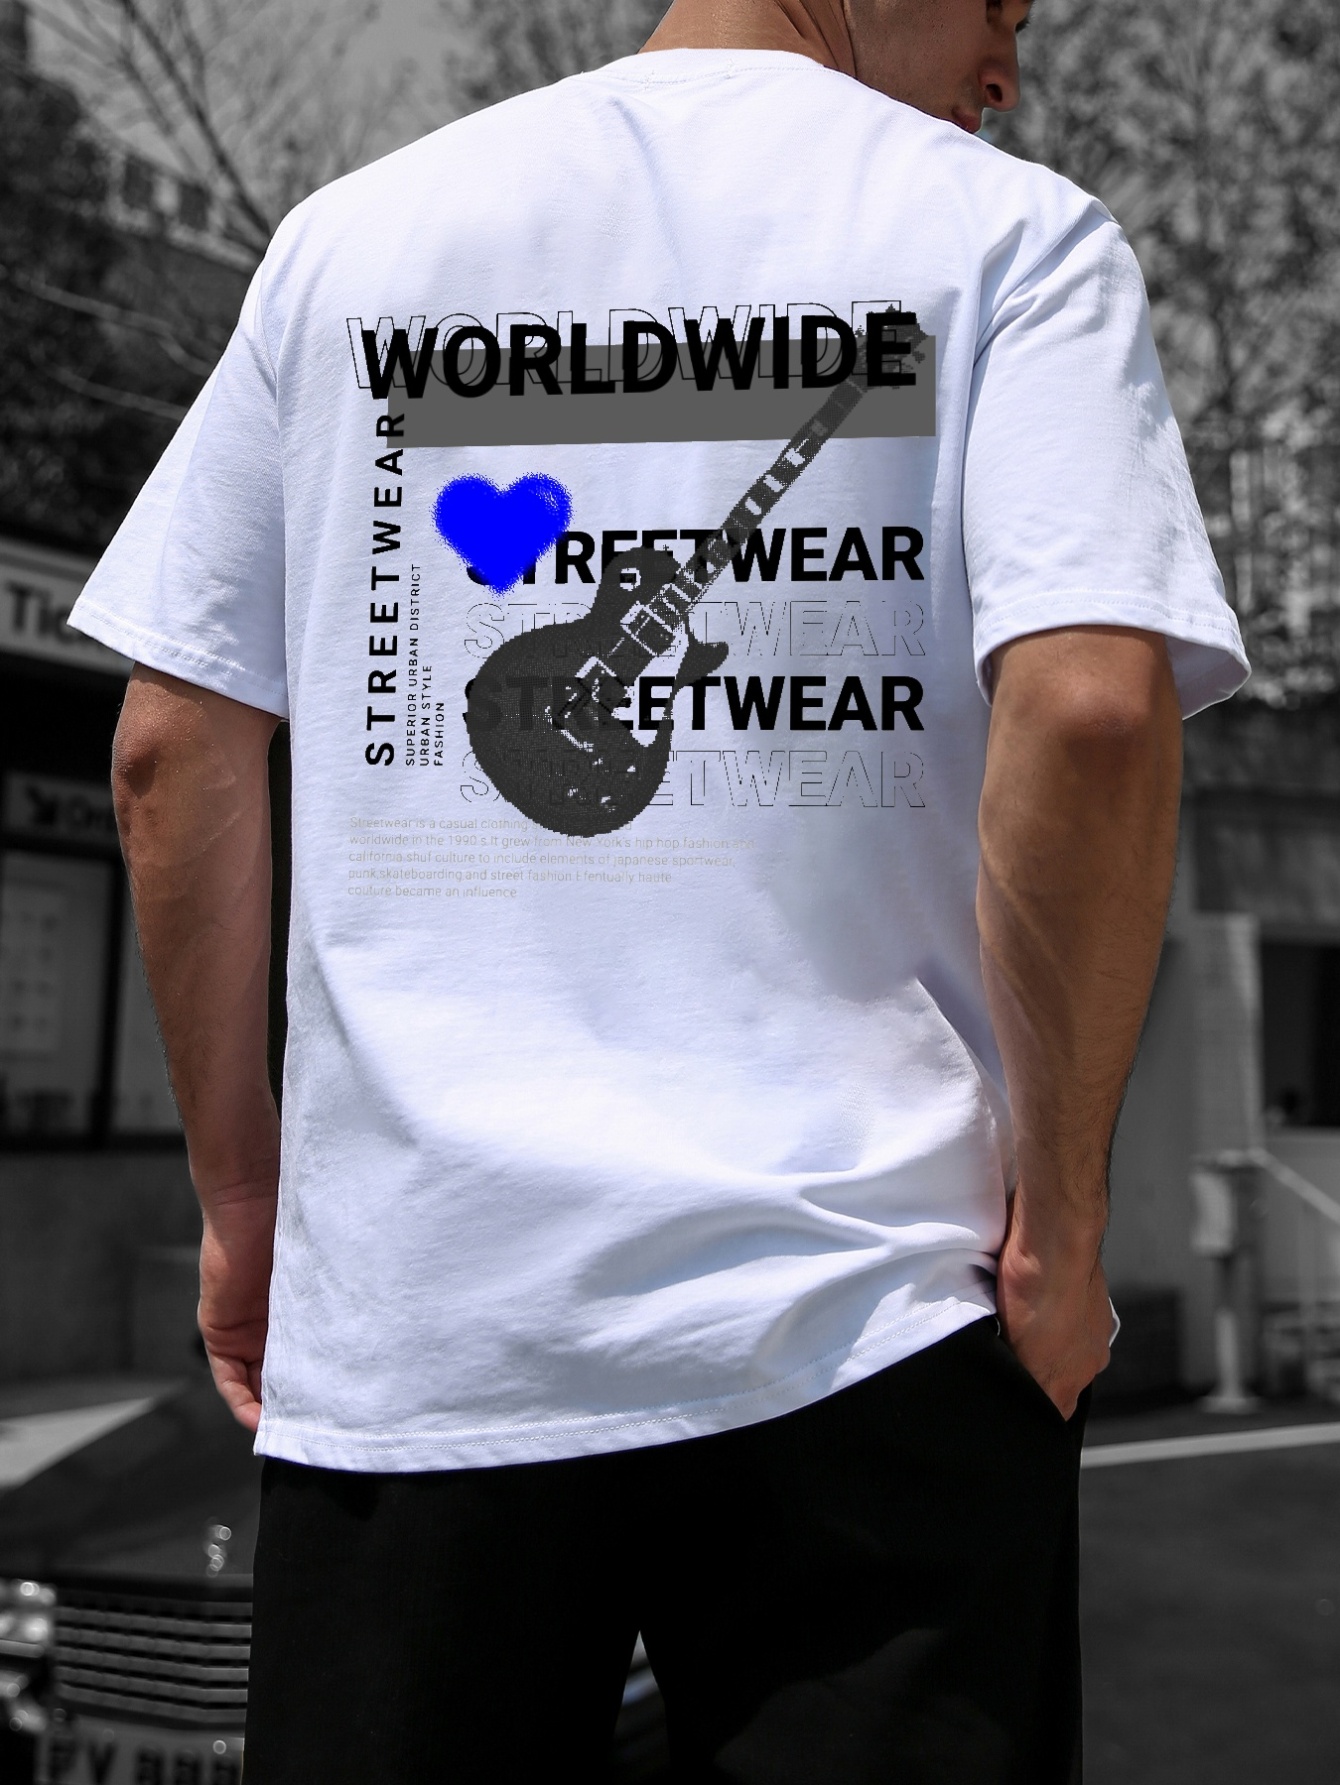 Streetwear Worldwide